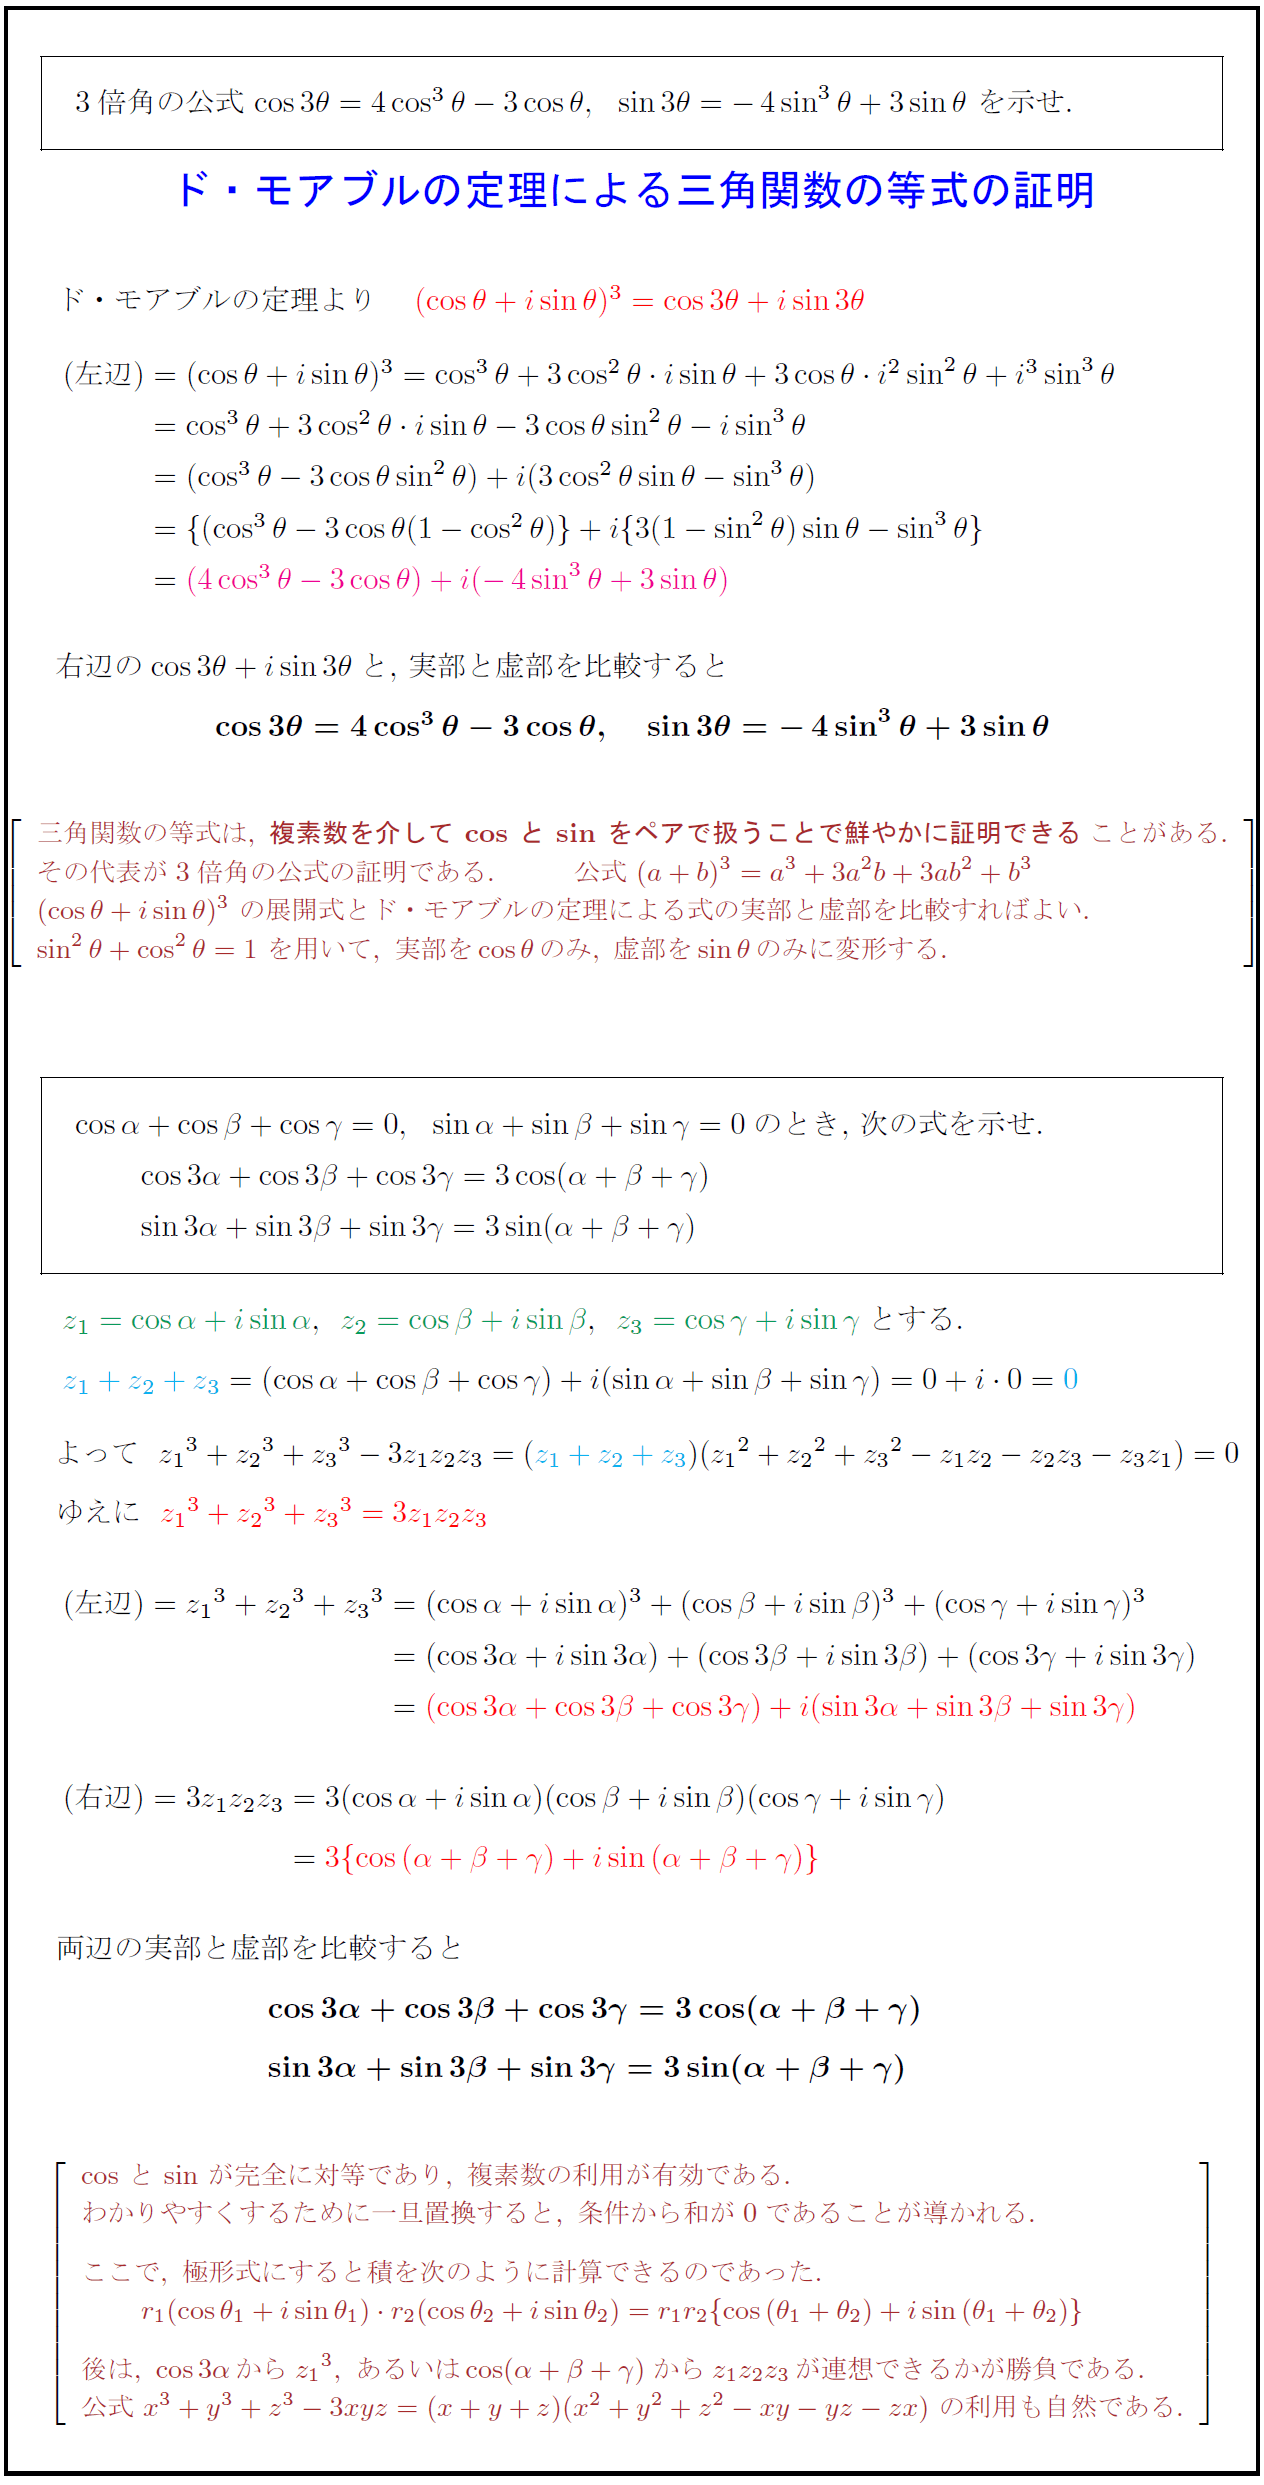 高校数学 ド モアブルの定理による3倍角の公式 三角関数の等式の証明 受験の月